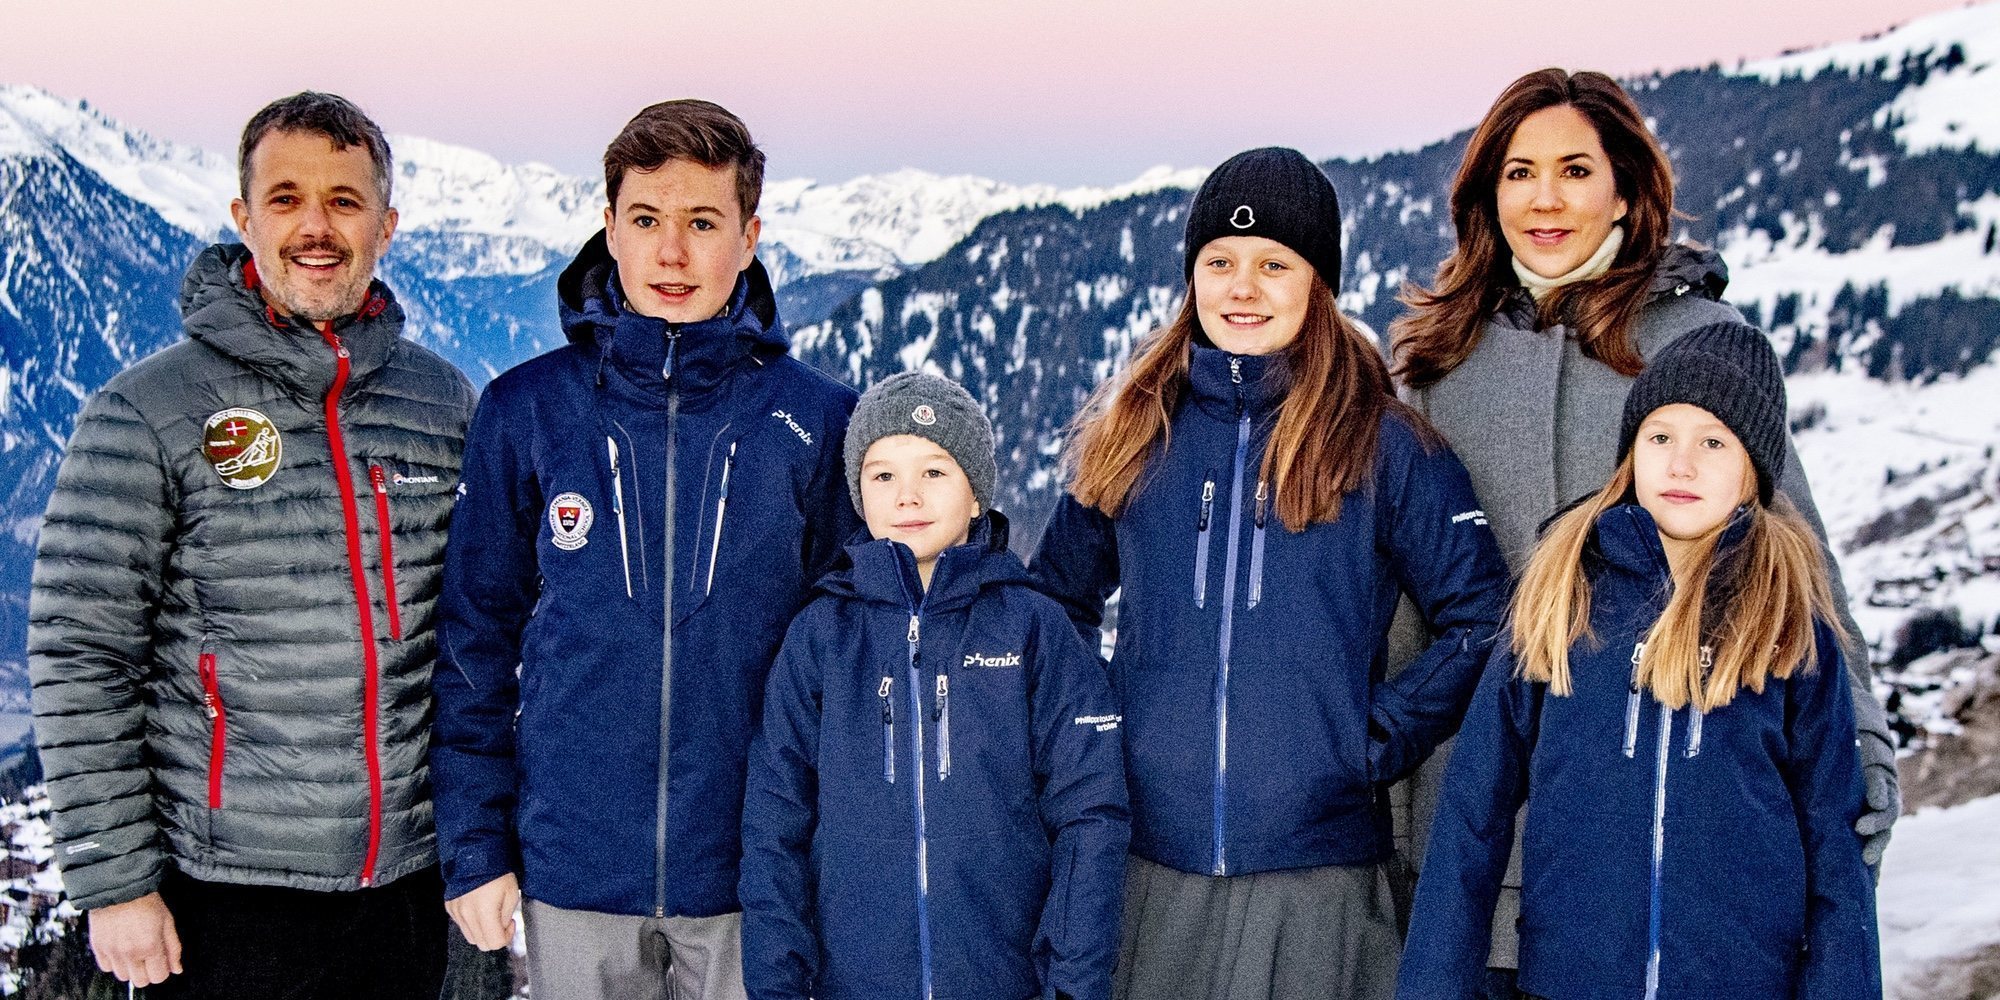 Federico y Mary de Dinamarca y sus cuatro hijos abandonan su estancia en Suiza y regresan a Dinamarca por el coronavirus